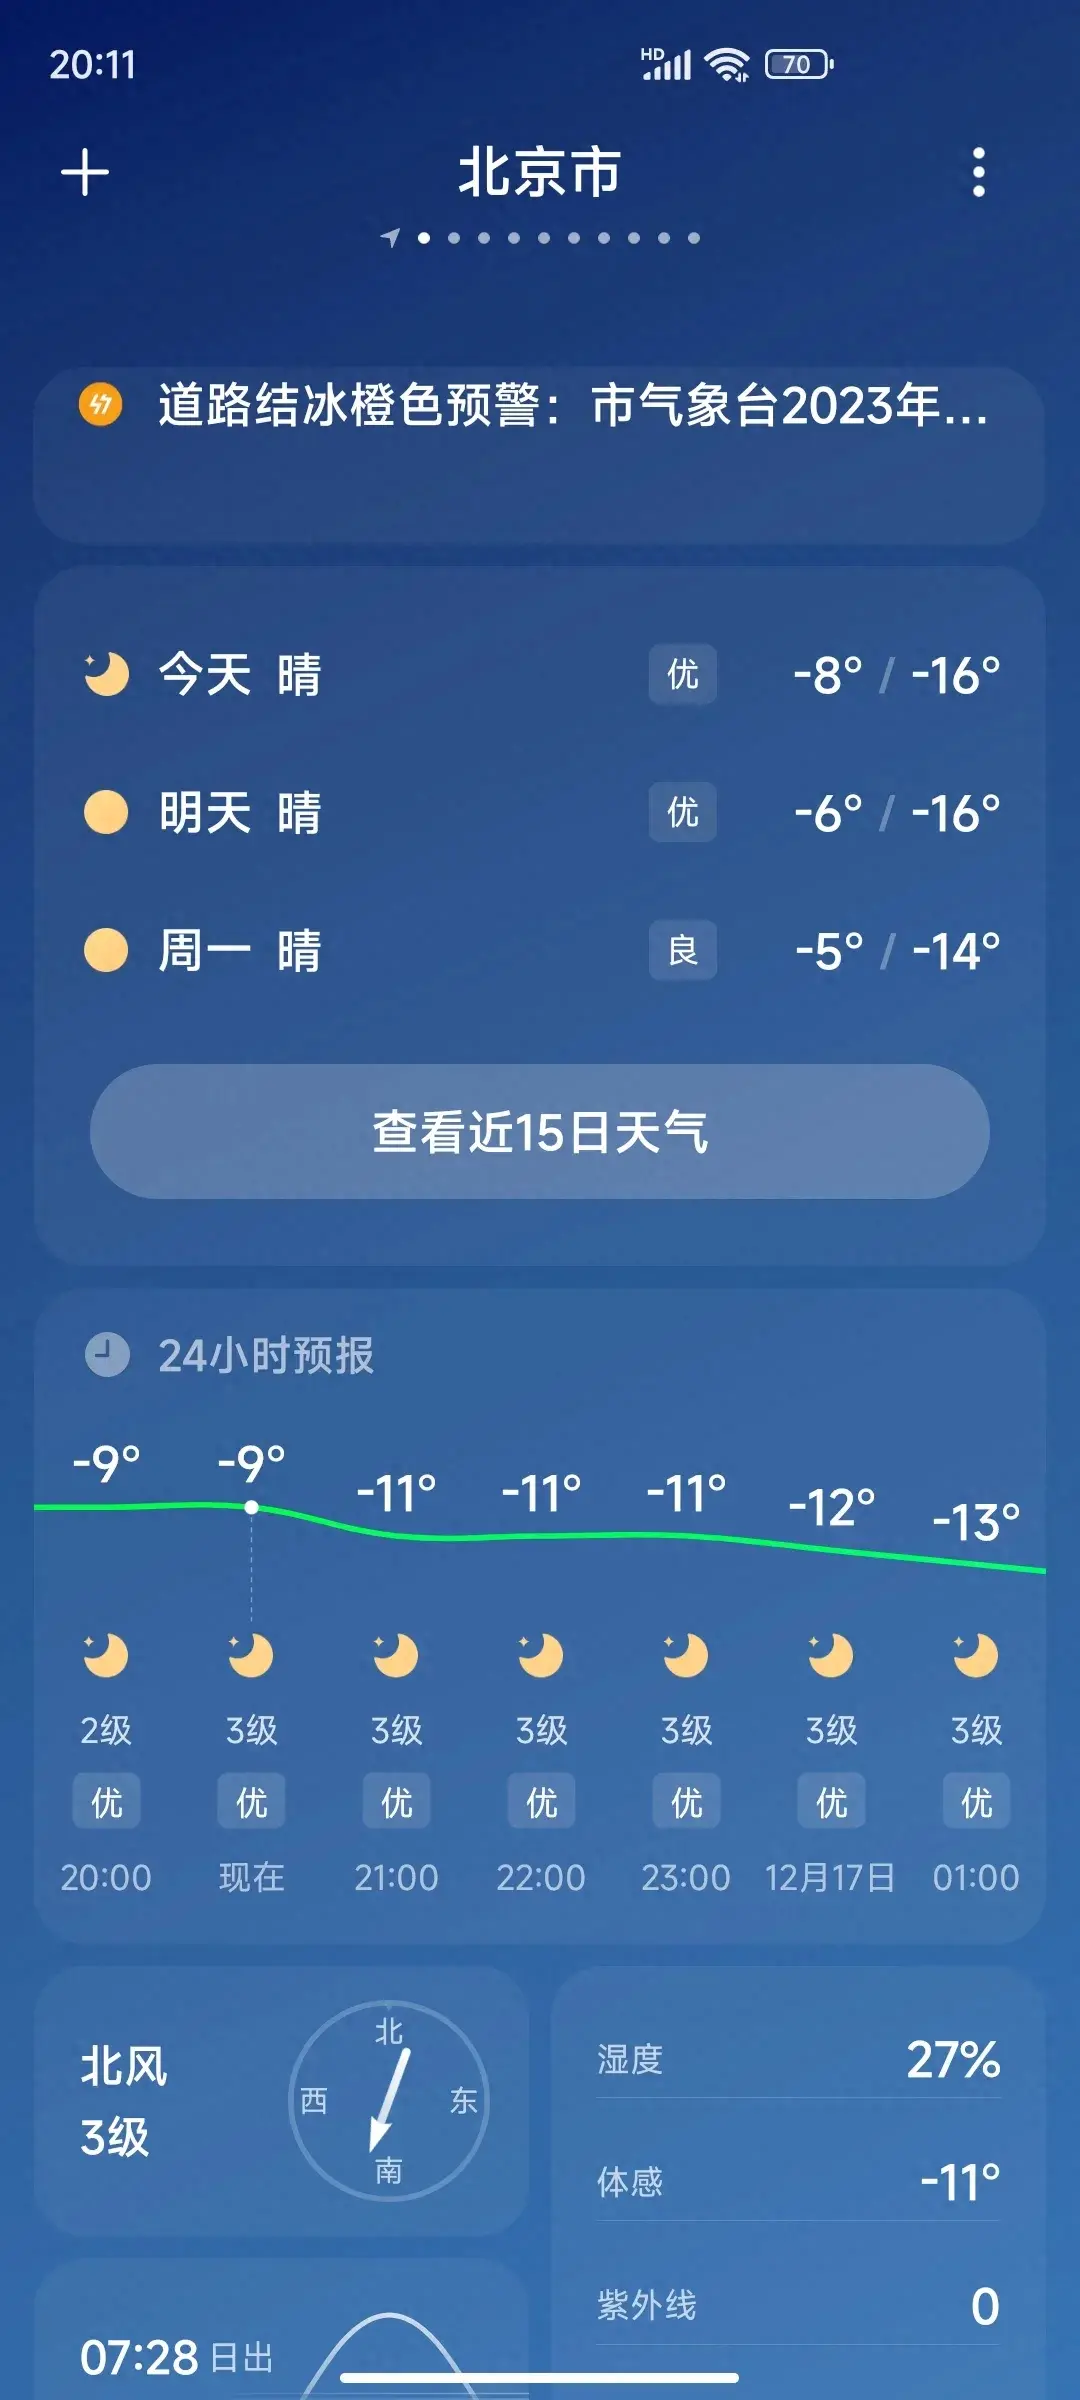 注意了 北京未来一周的天气预报出来了